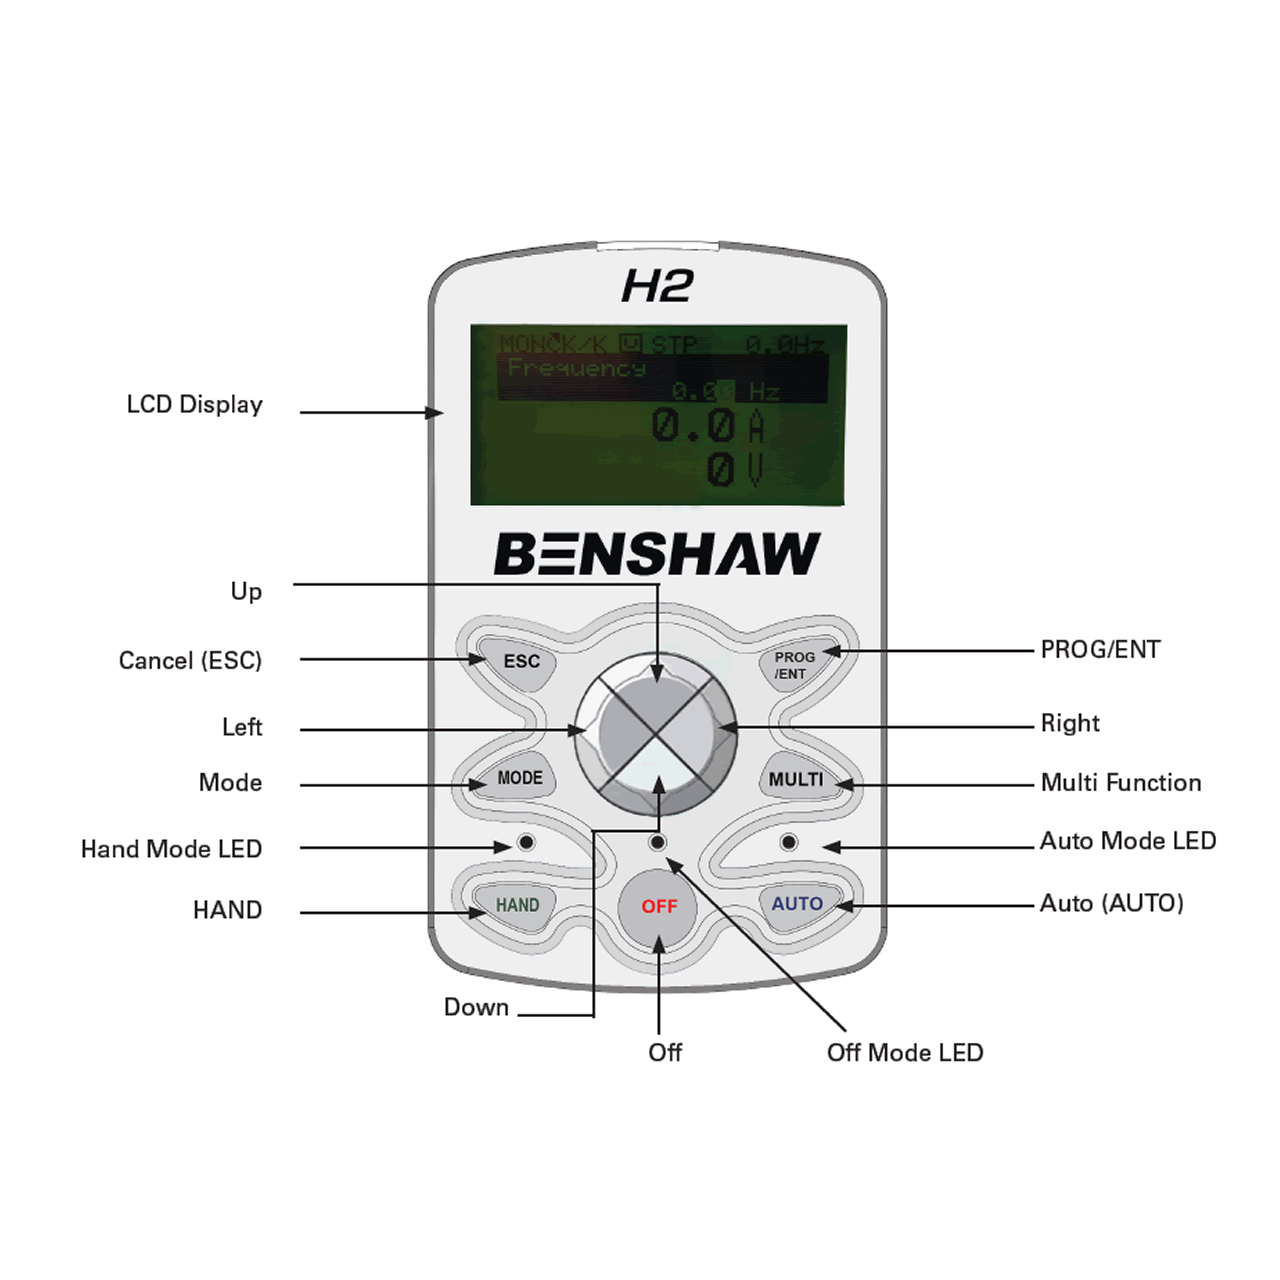 Benshaw RSI-250-H2-4C keypad